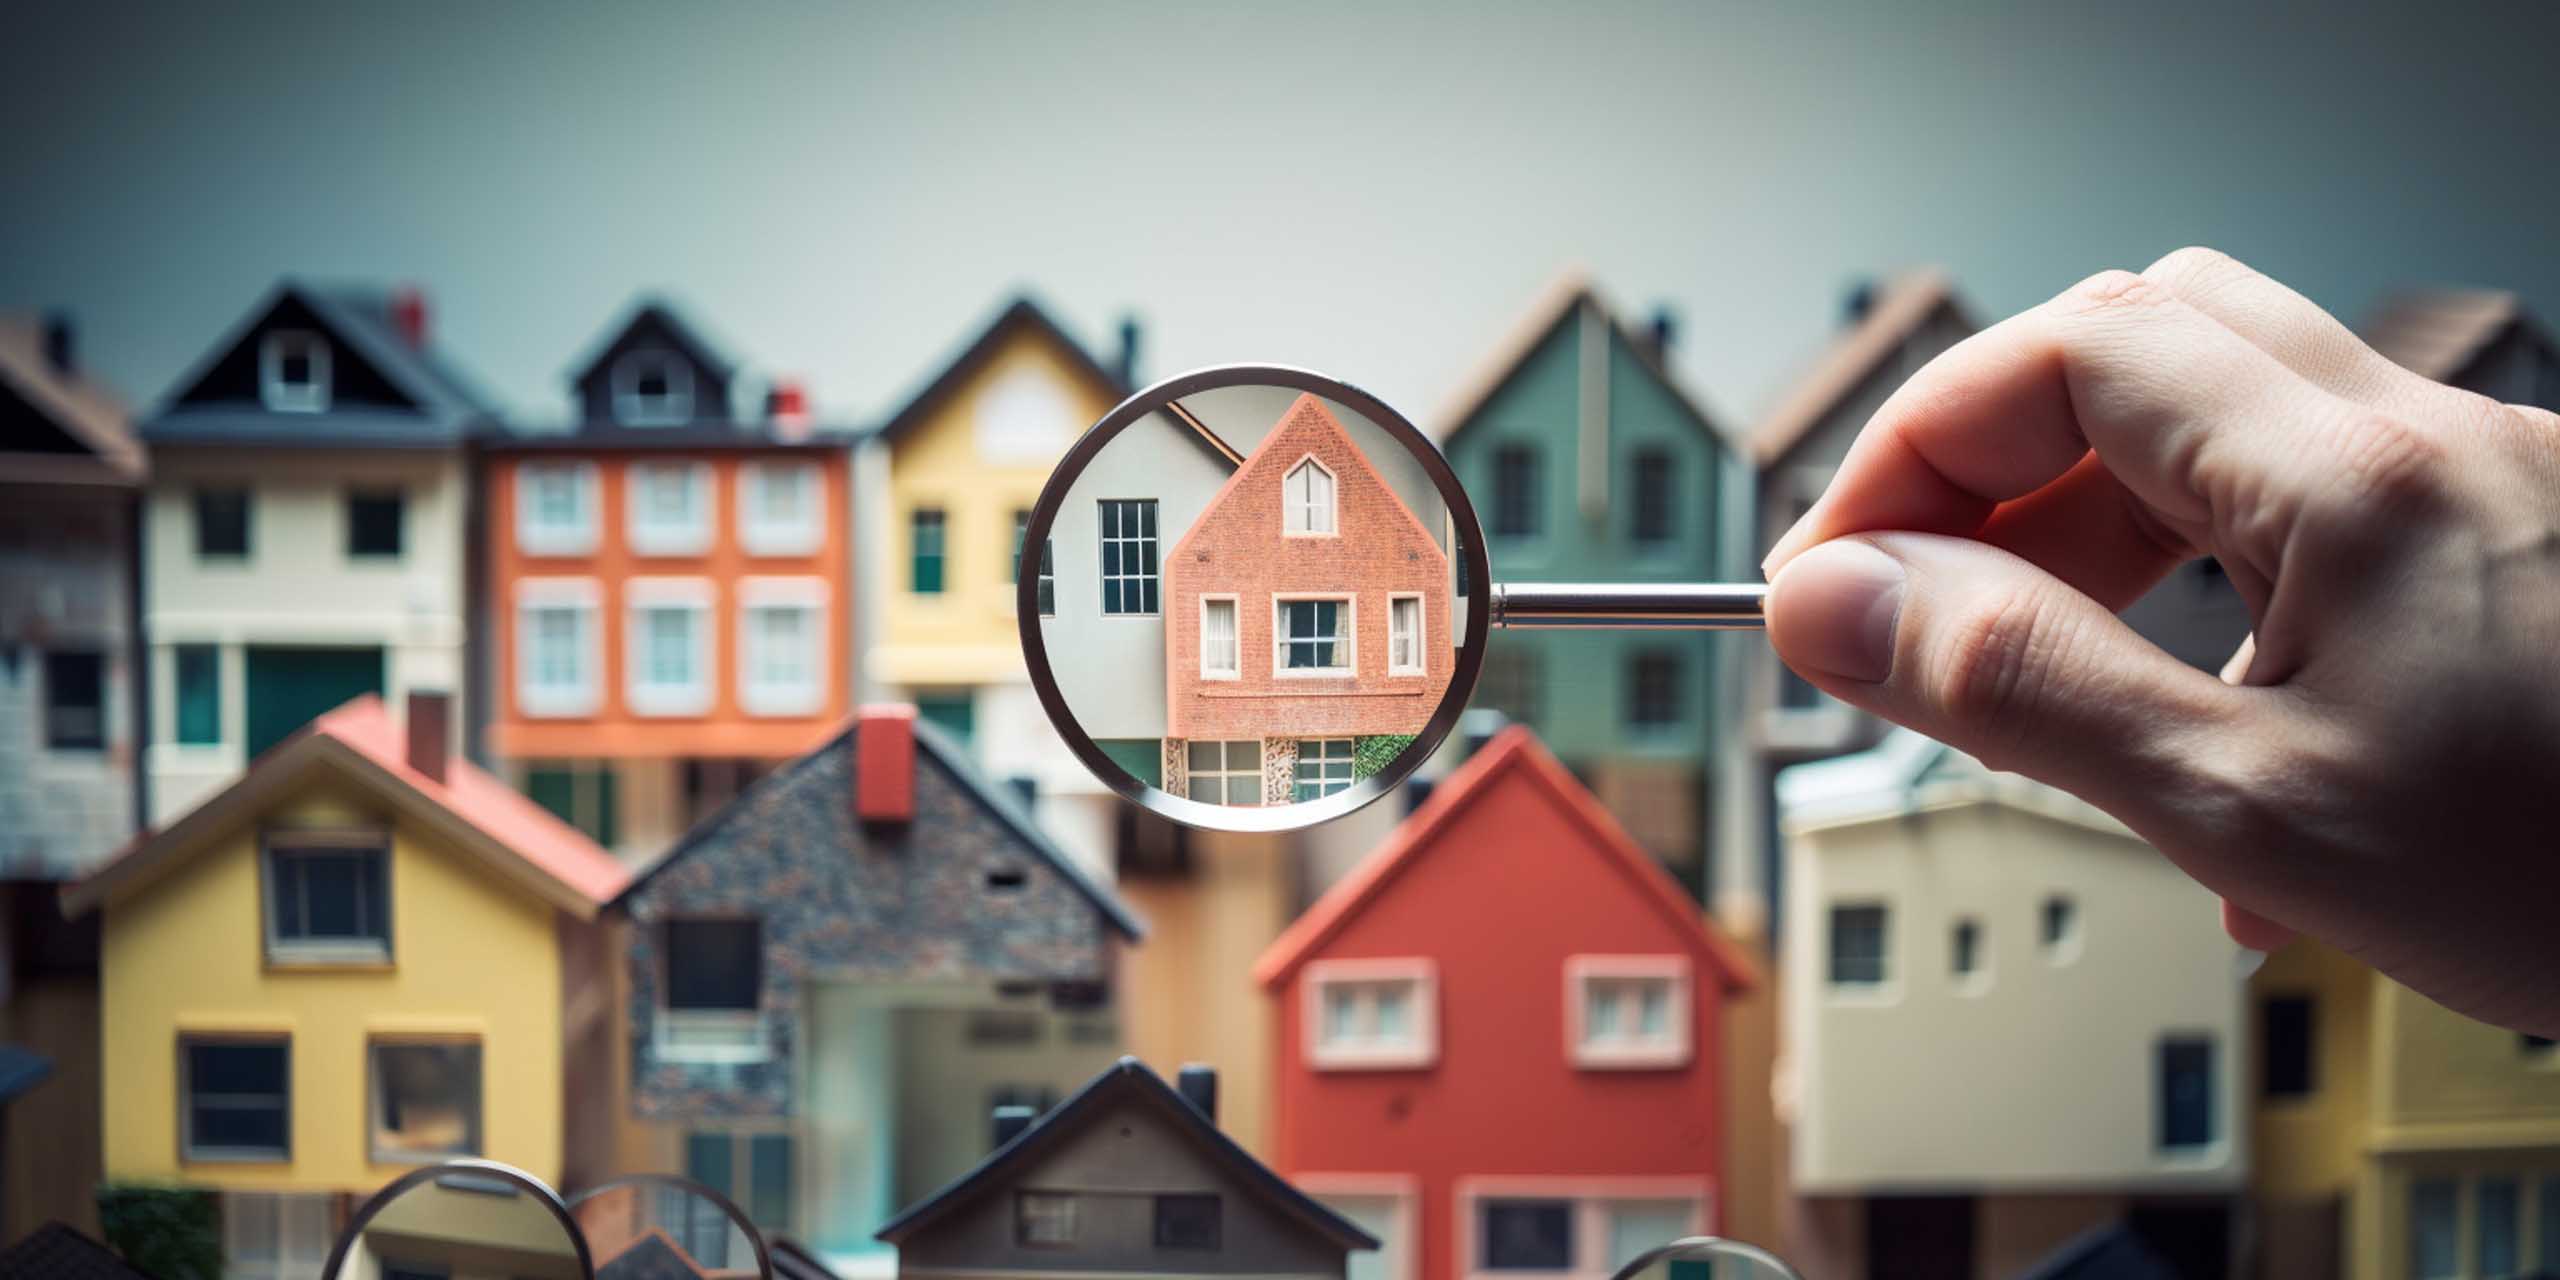 Modellhaus wird mit einer Lupe vergrößert, um darzustellen, dass man es für eine Immobilienbewertung genau prüfen muss